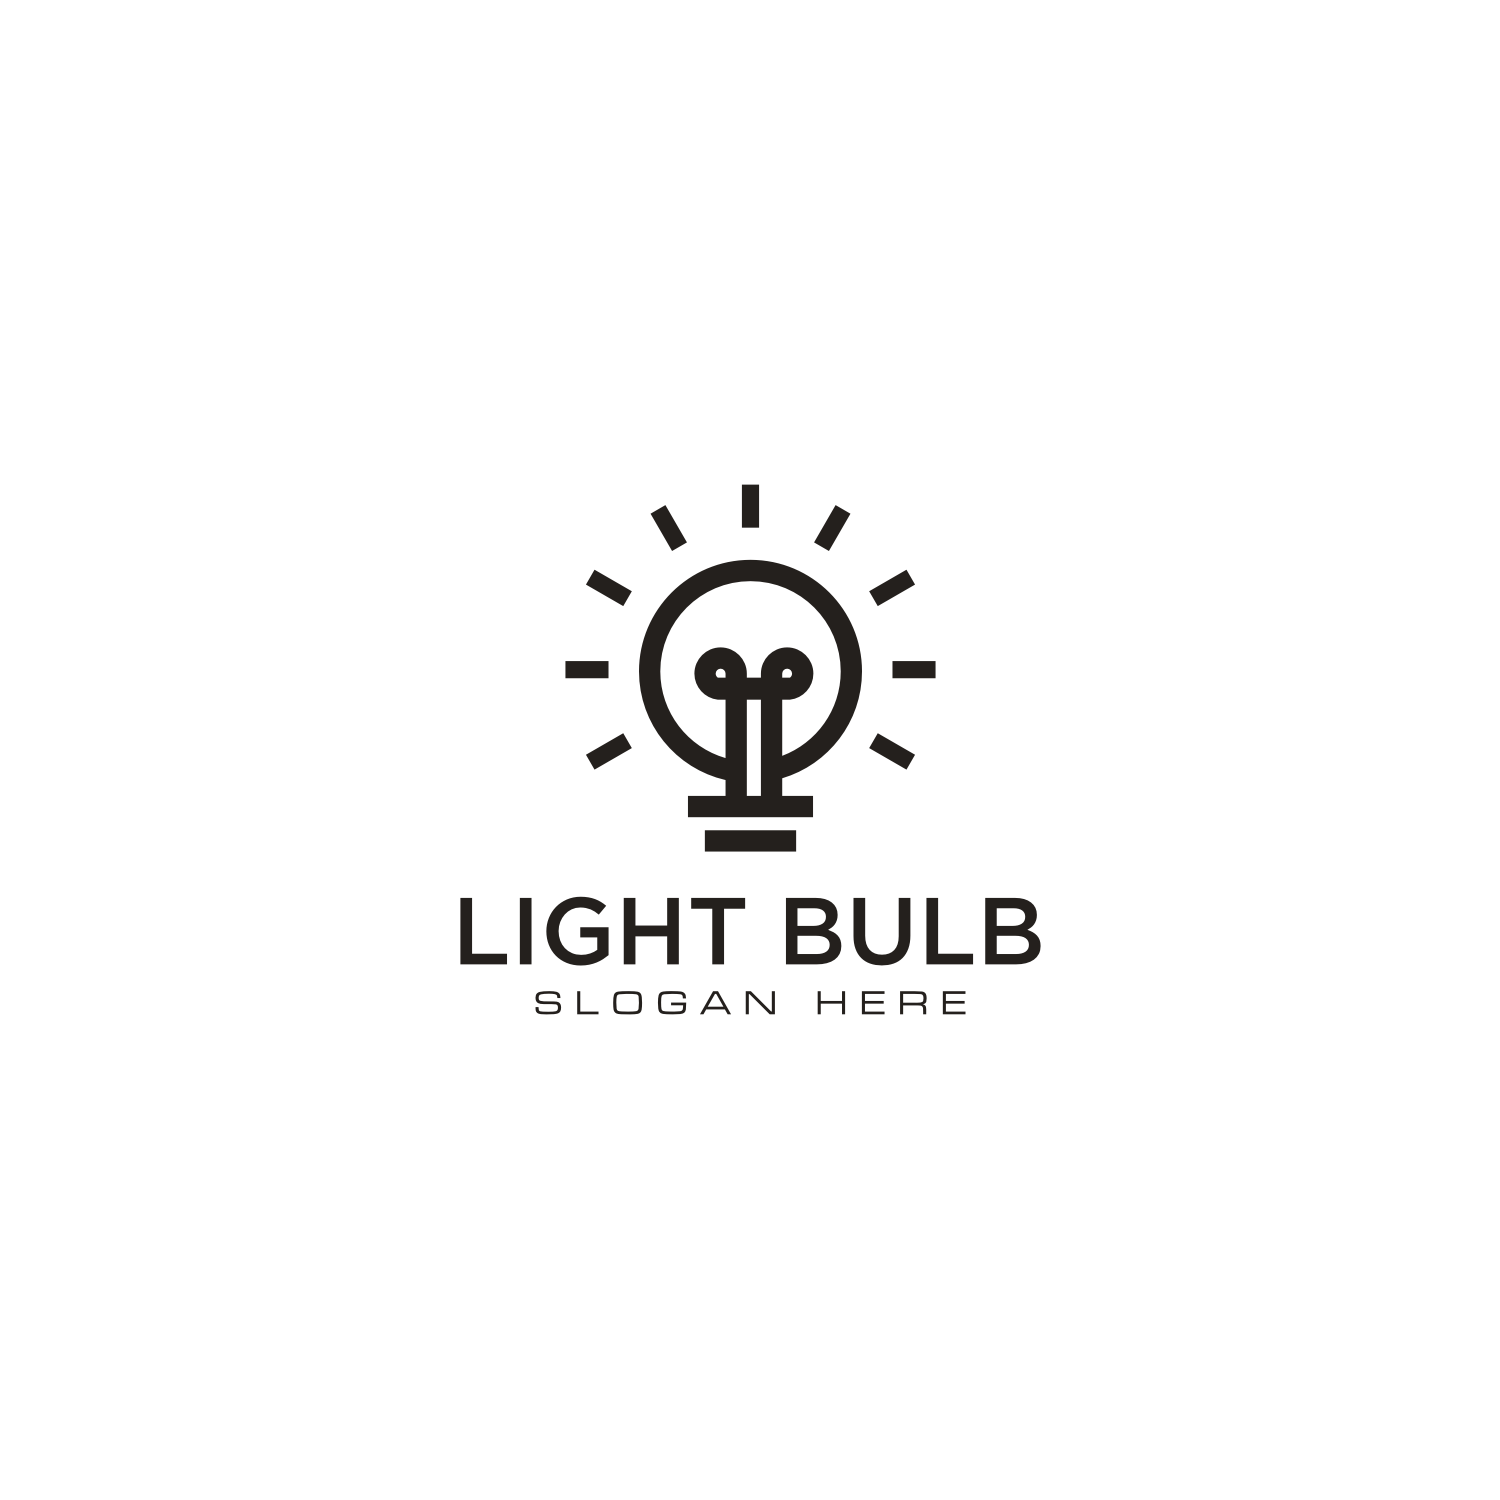 Vector for free use: Light bulb logo